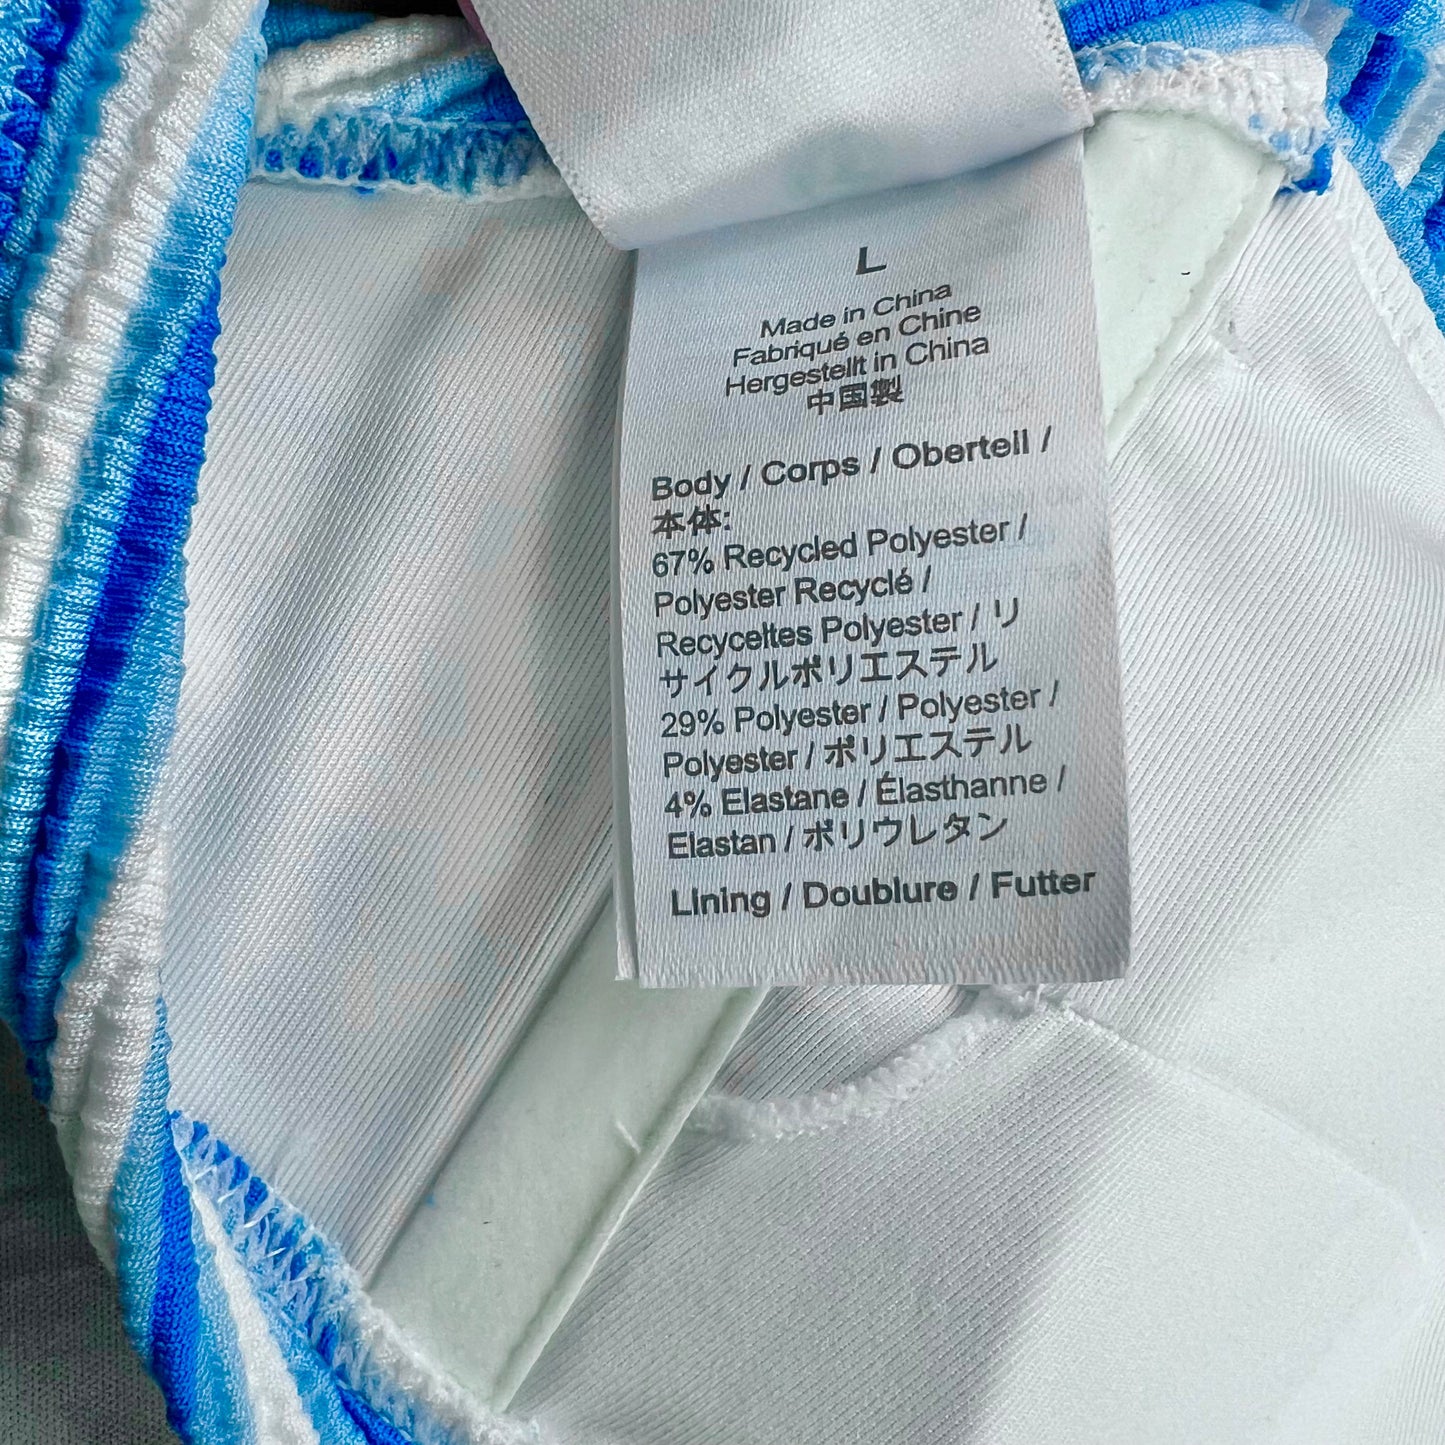 Blue & White Swimsuit By J.Michelle, Size: L